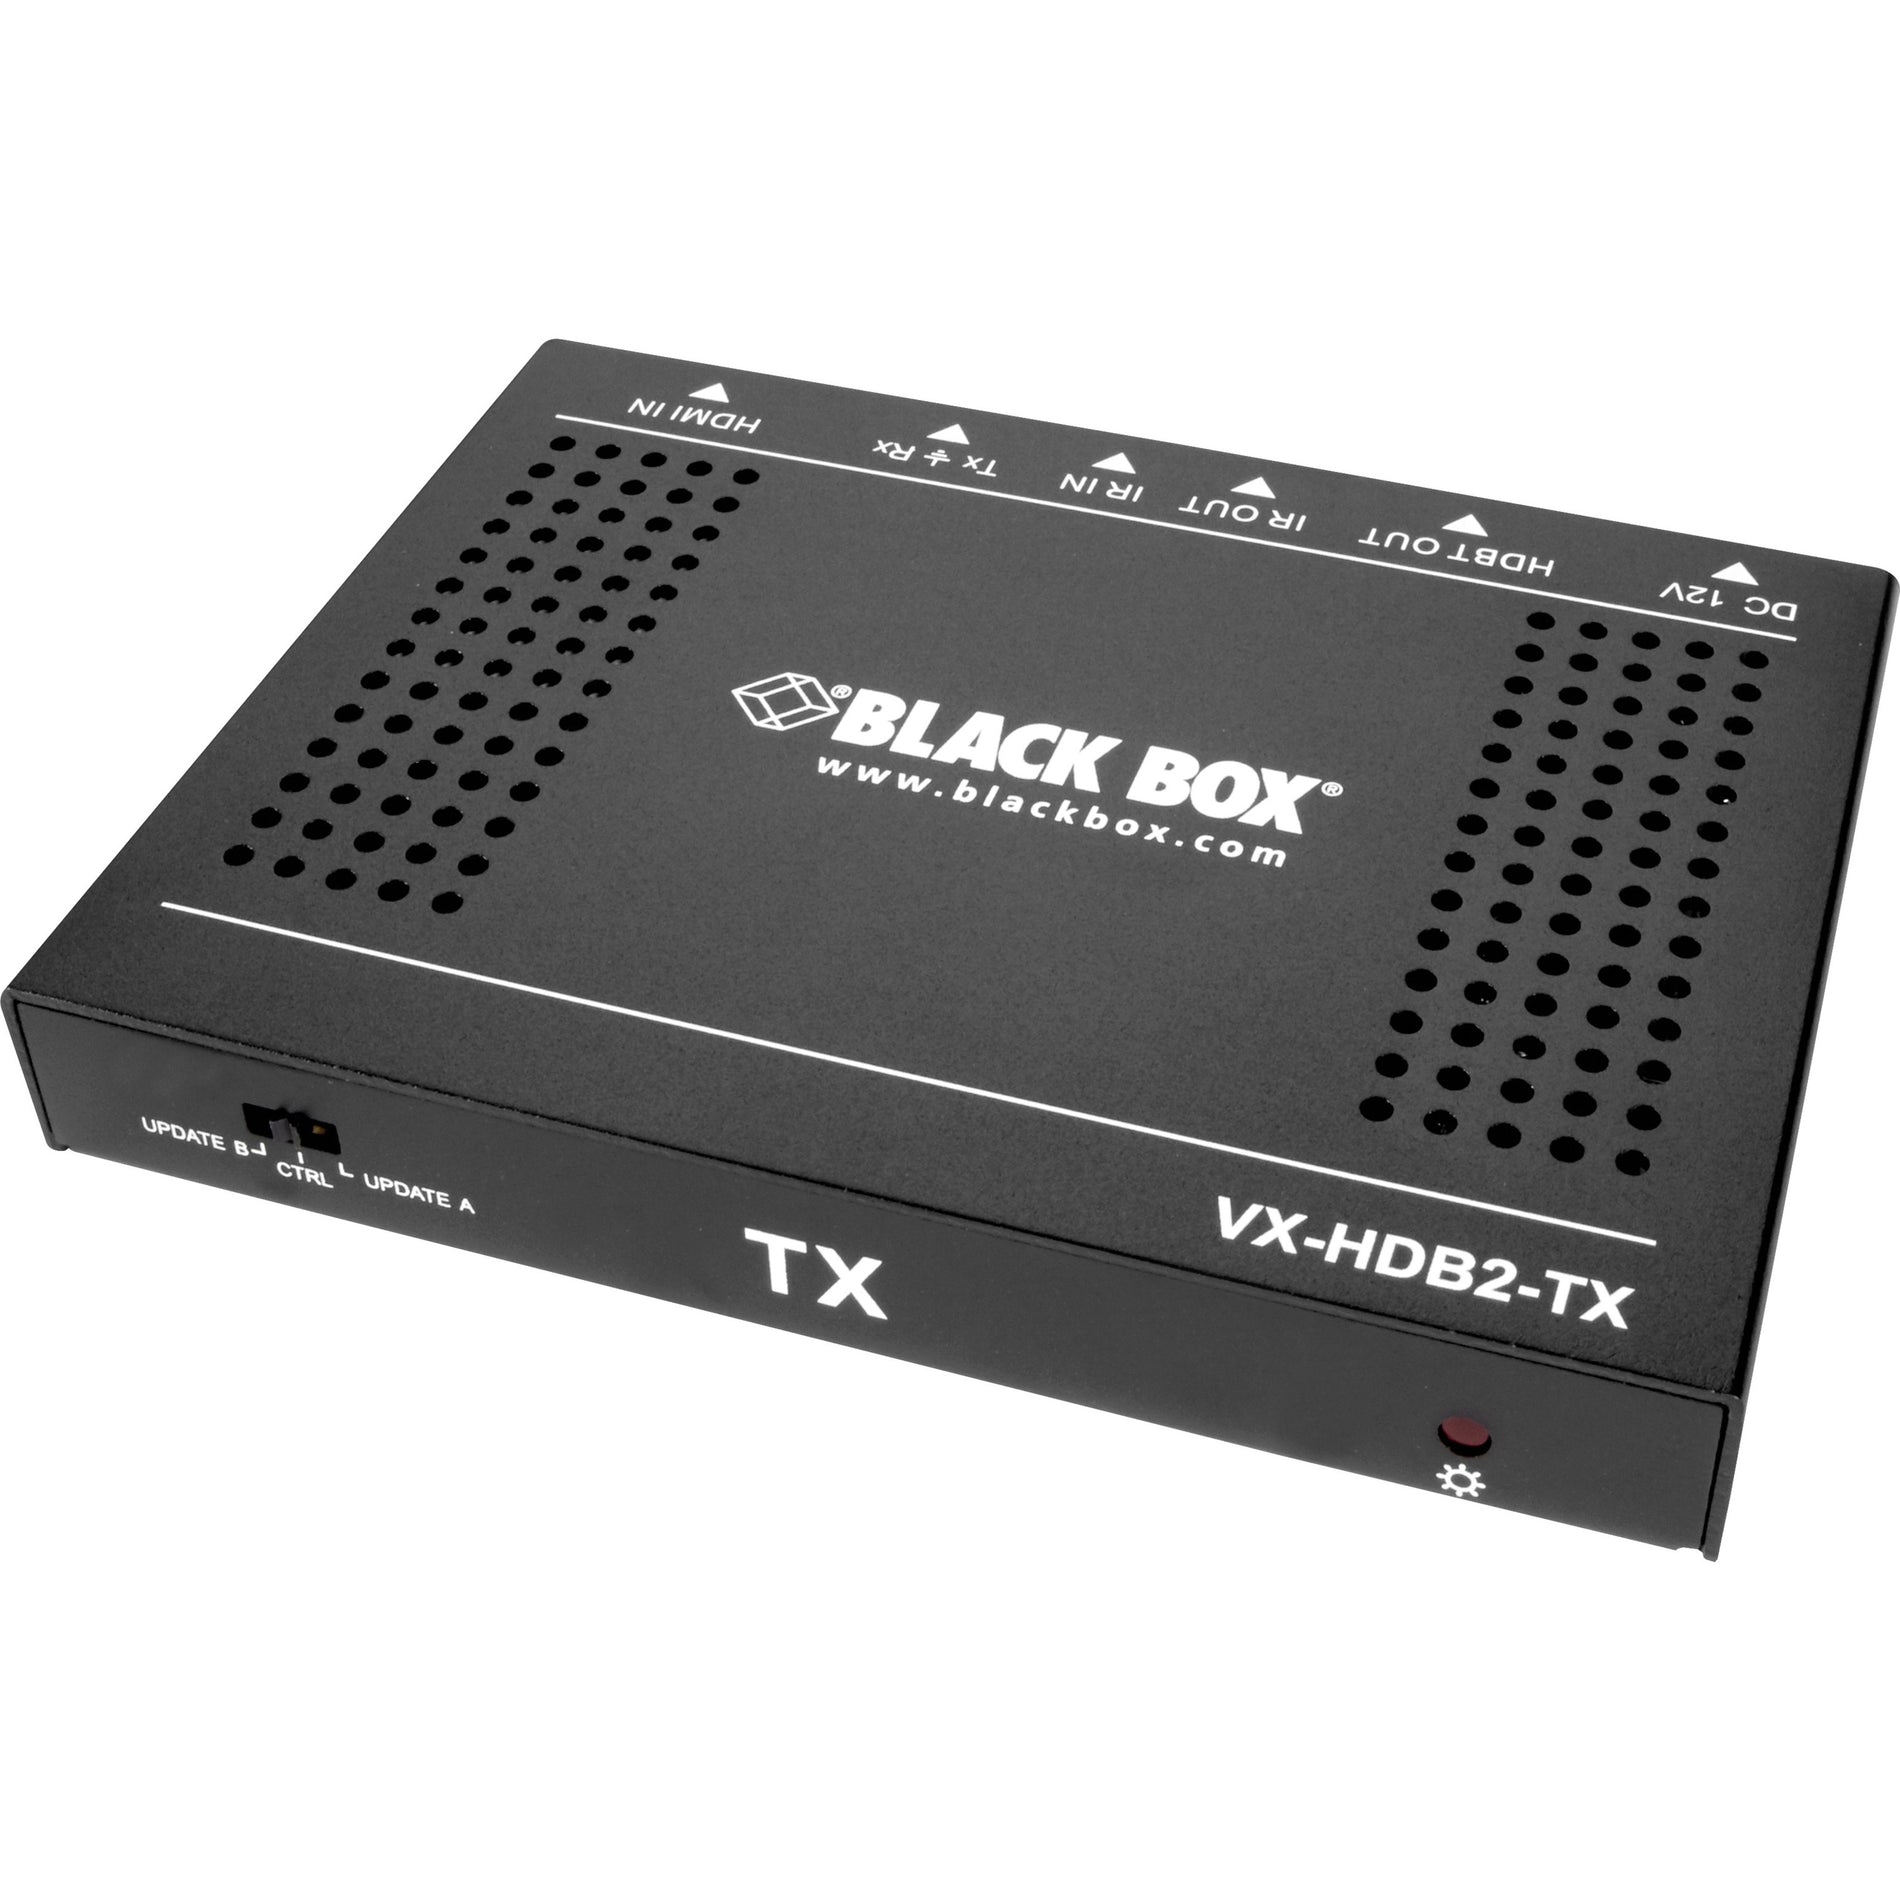 Black Box VX-HDB2-TX HDR CATx Video Extender TX - 4K HDMI 2.0, 60Hz, 4:4:4 Chroma, 2-Year Warranty